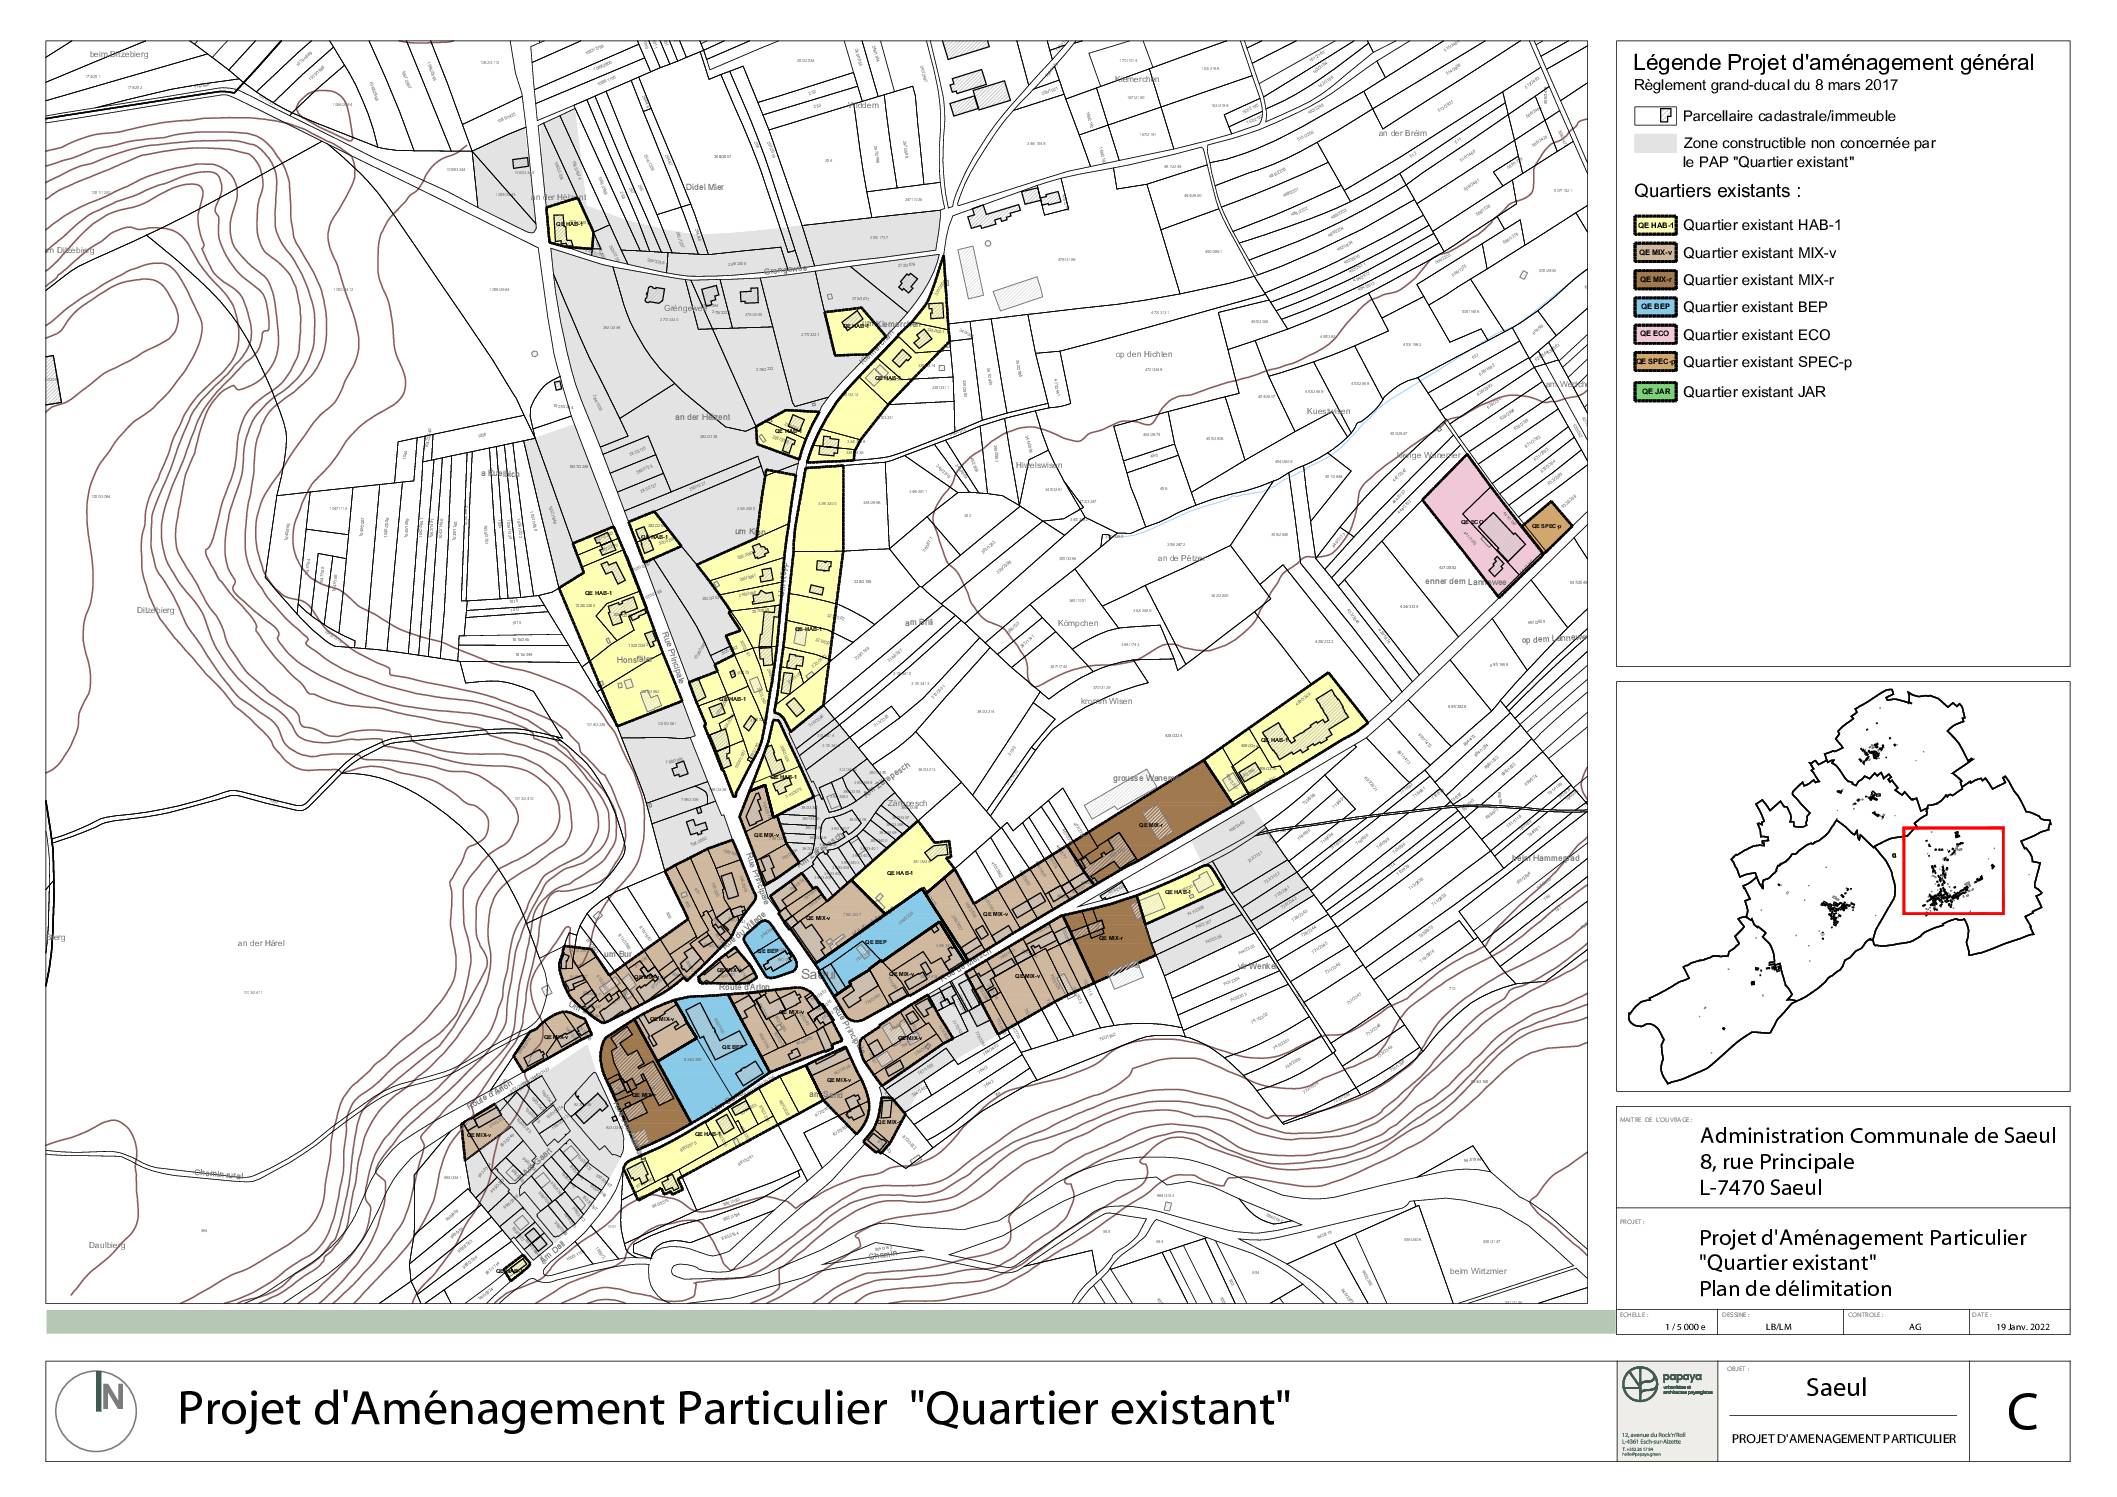 Projet d’Aménagement Particulier « Quartier existant » (PAP QE) de la commune de Saeul - Partie graphique